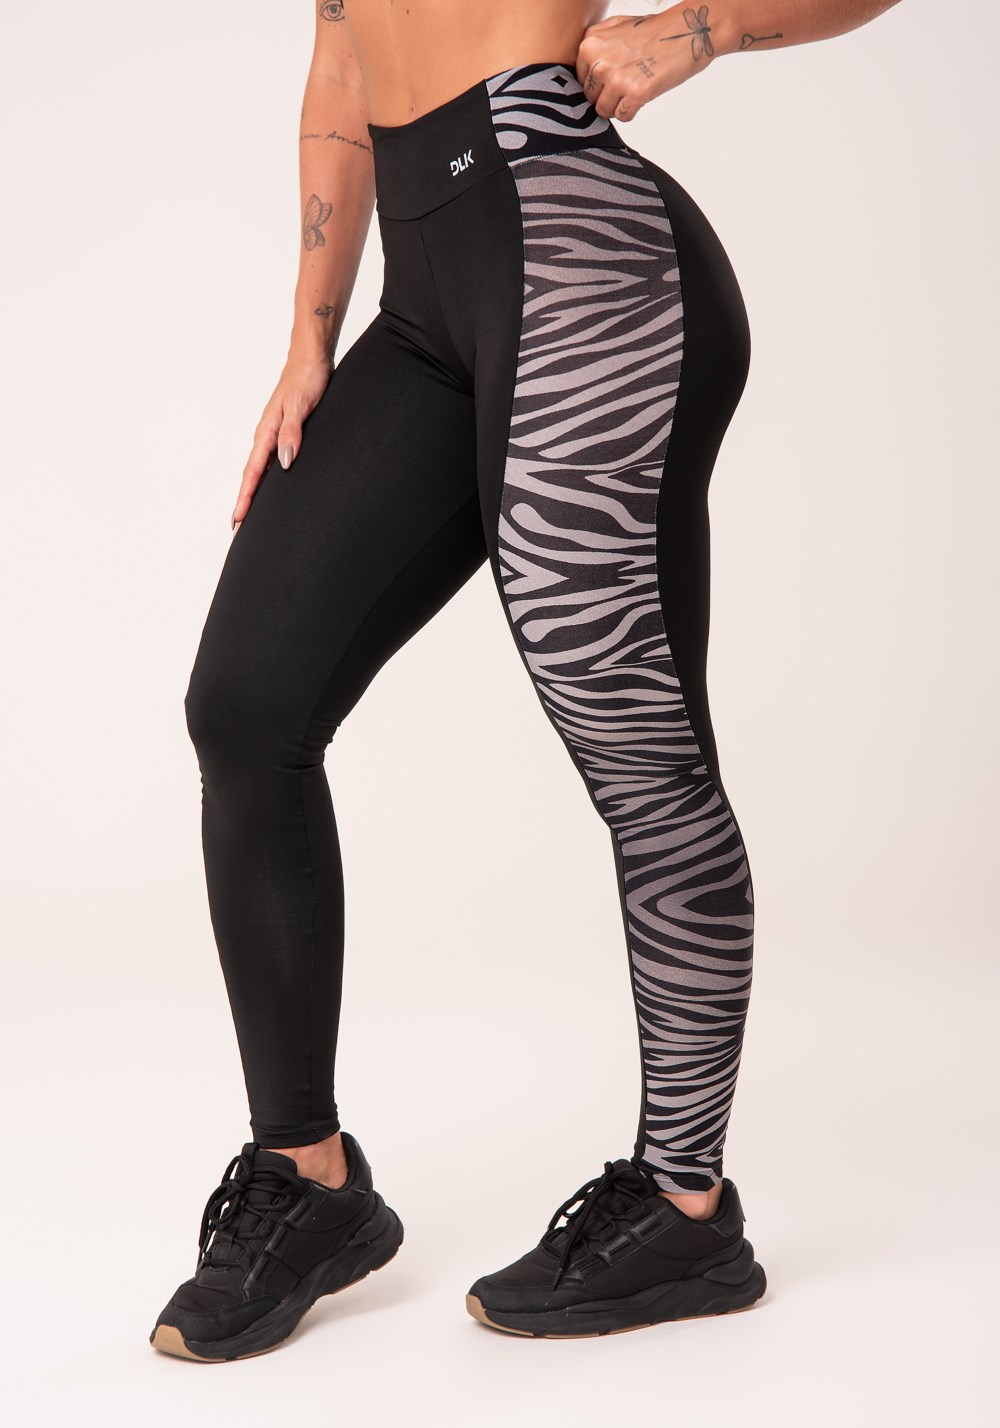 Calça legging wild preta com detalhe lateral zebra cinza